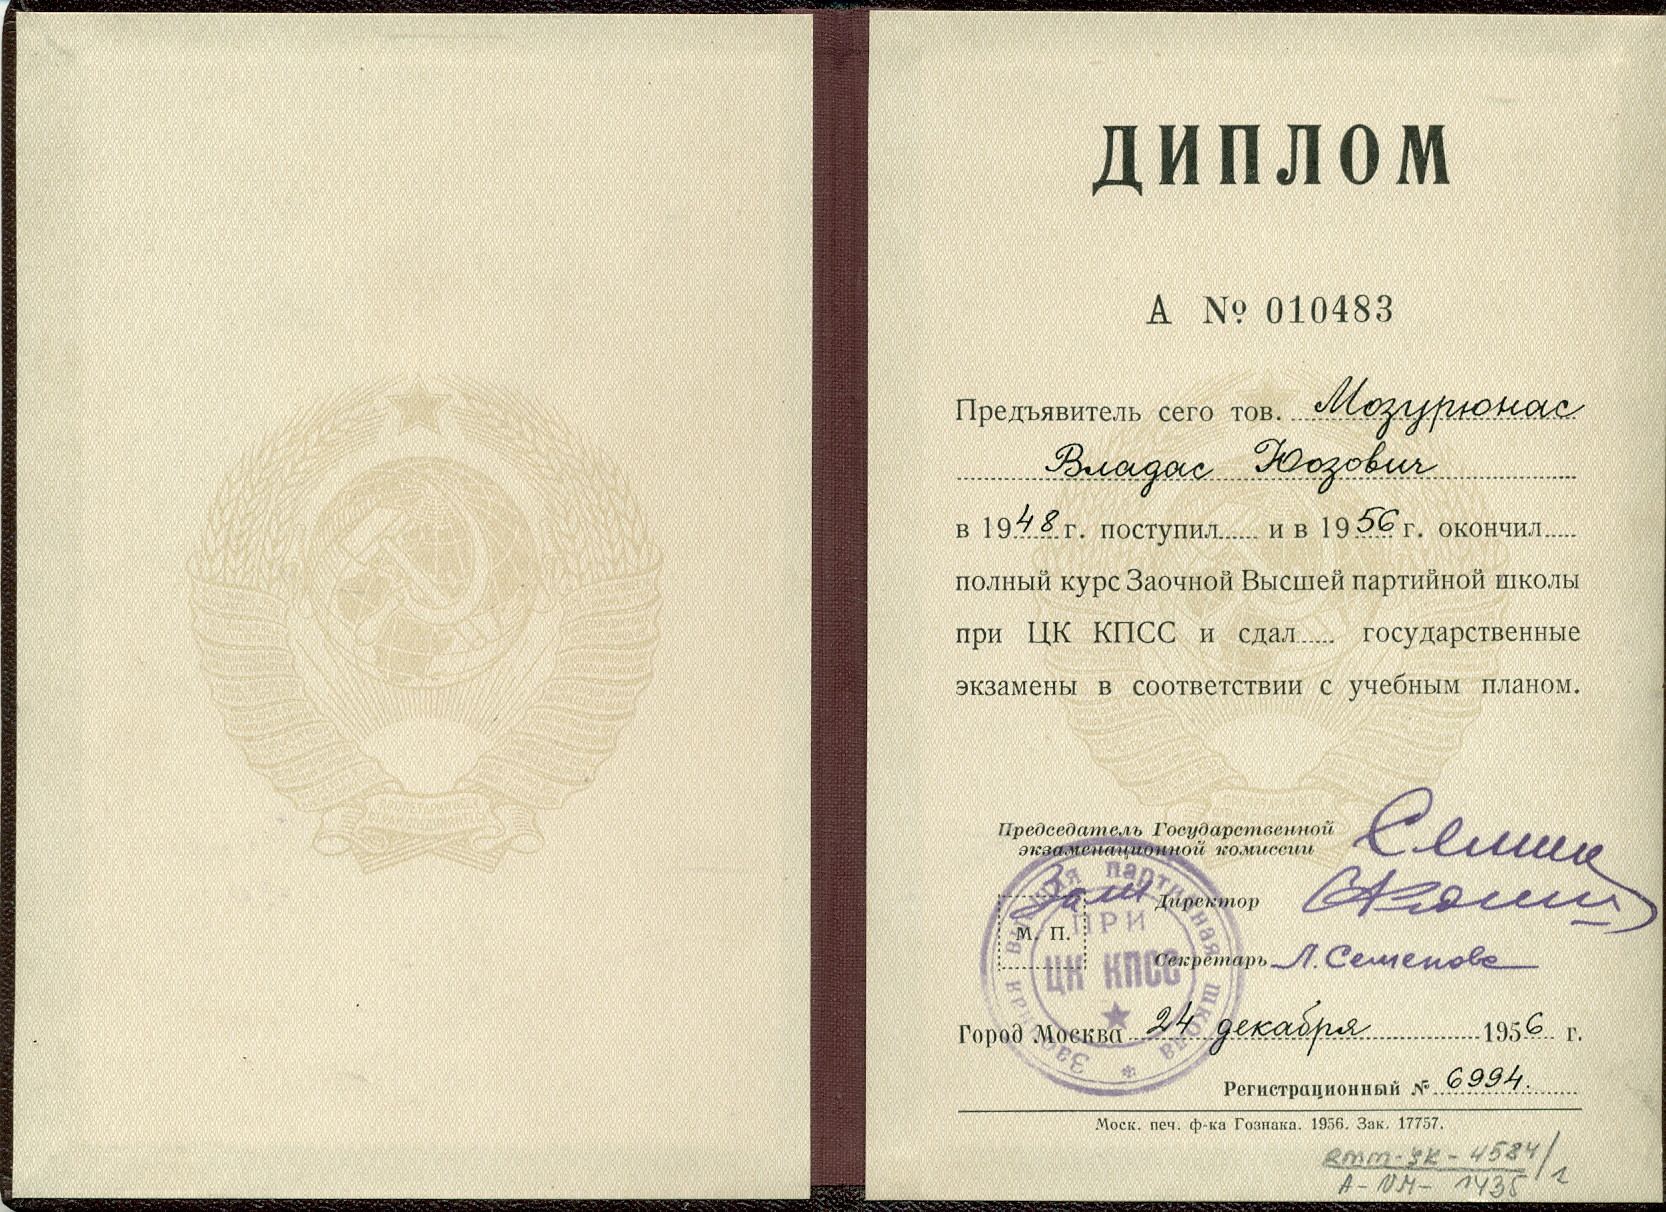 Aukštosios partinės mokyklos prie prie SSKP CK diplomas, išduotas V. Mozūriūnui. Maskva, 1956 m. – RMM ĮK 4584/1